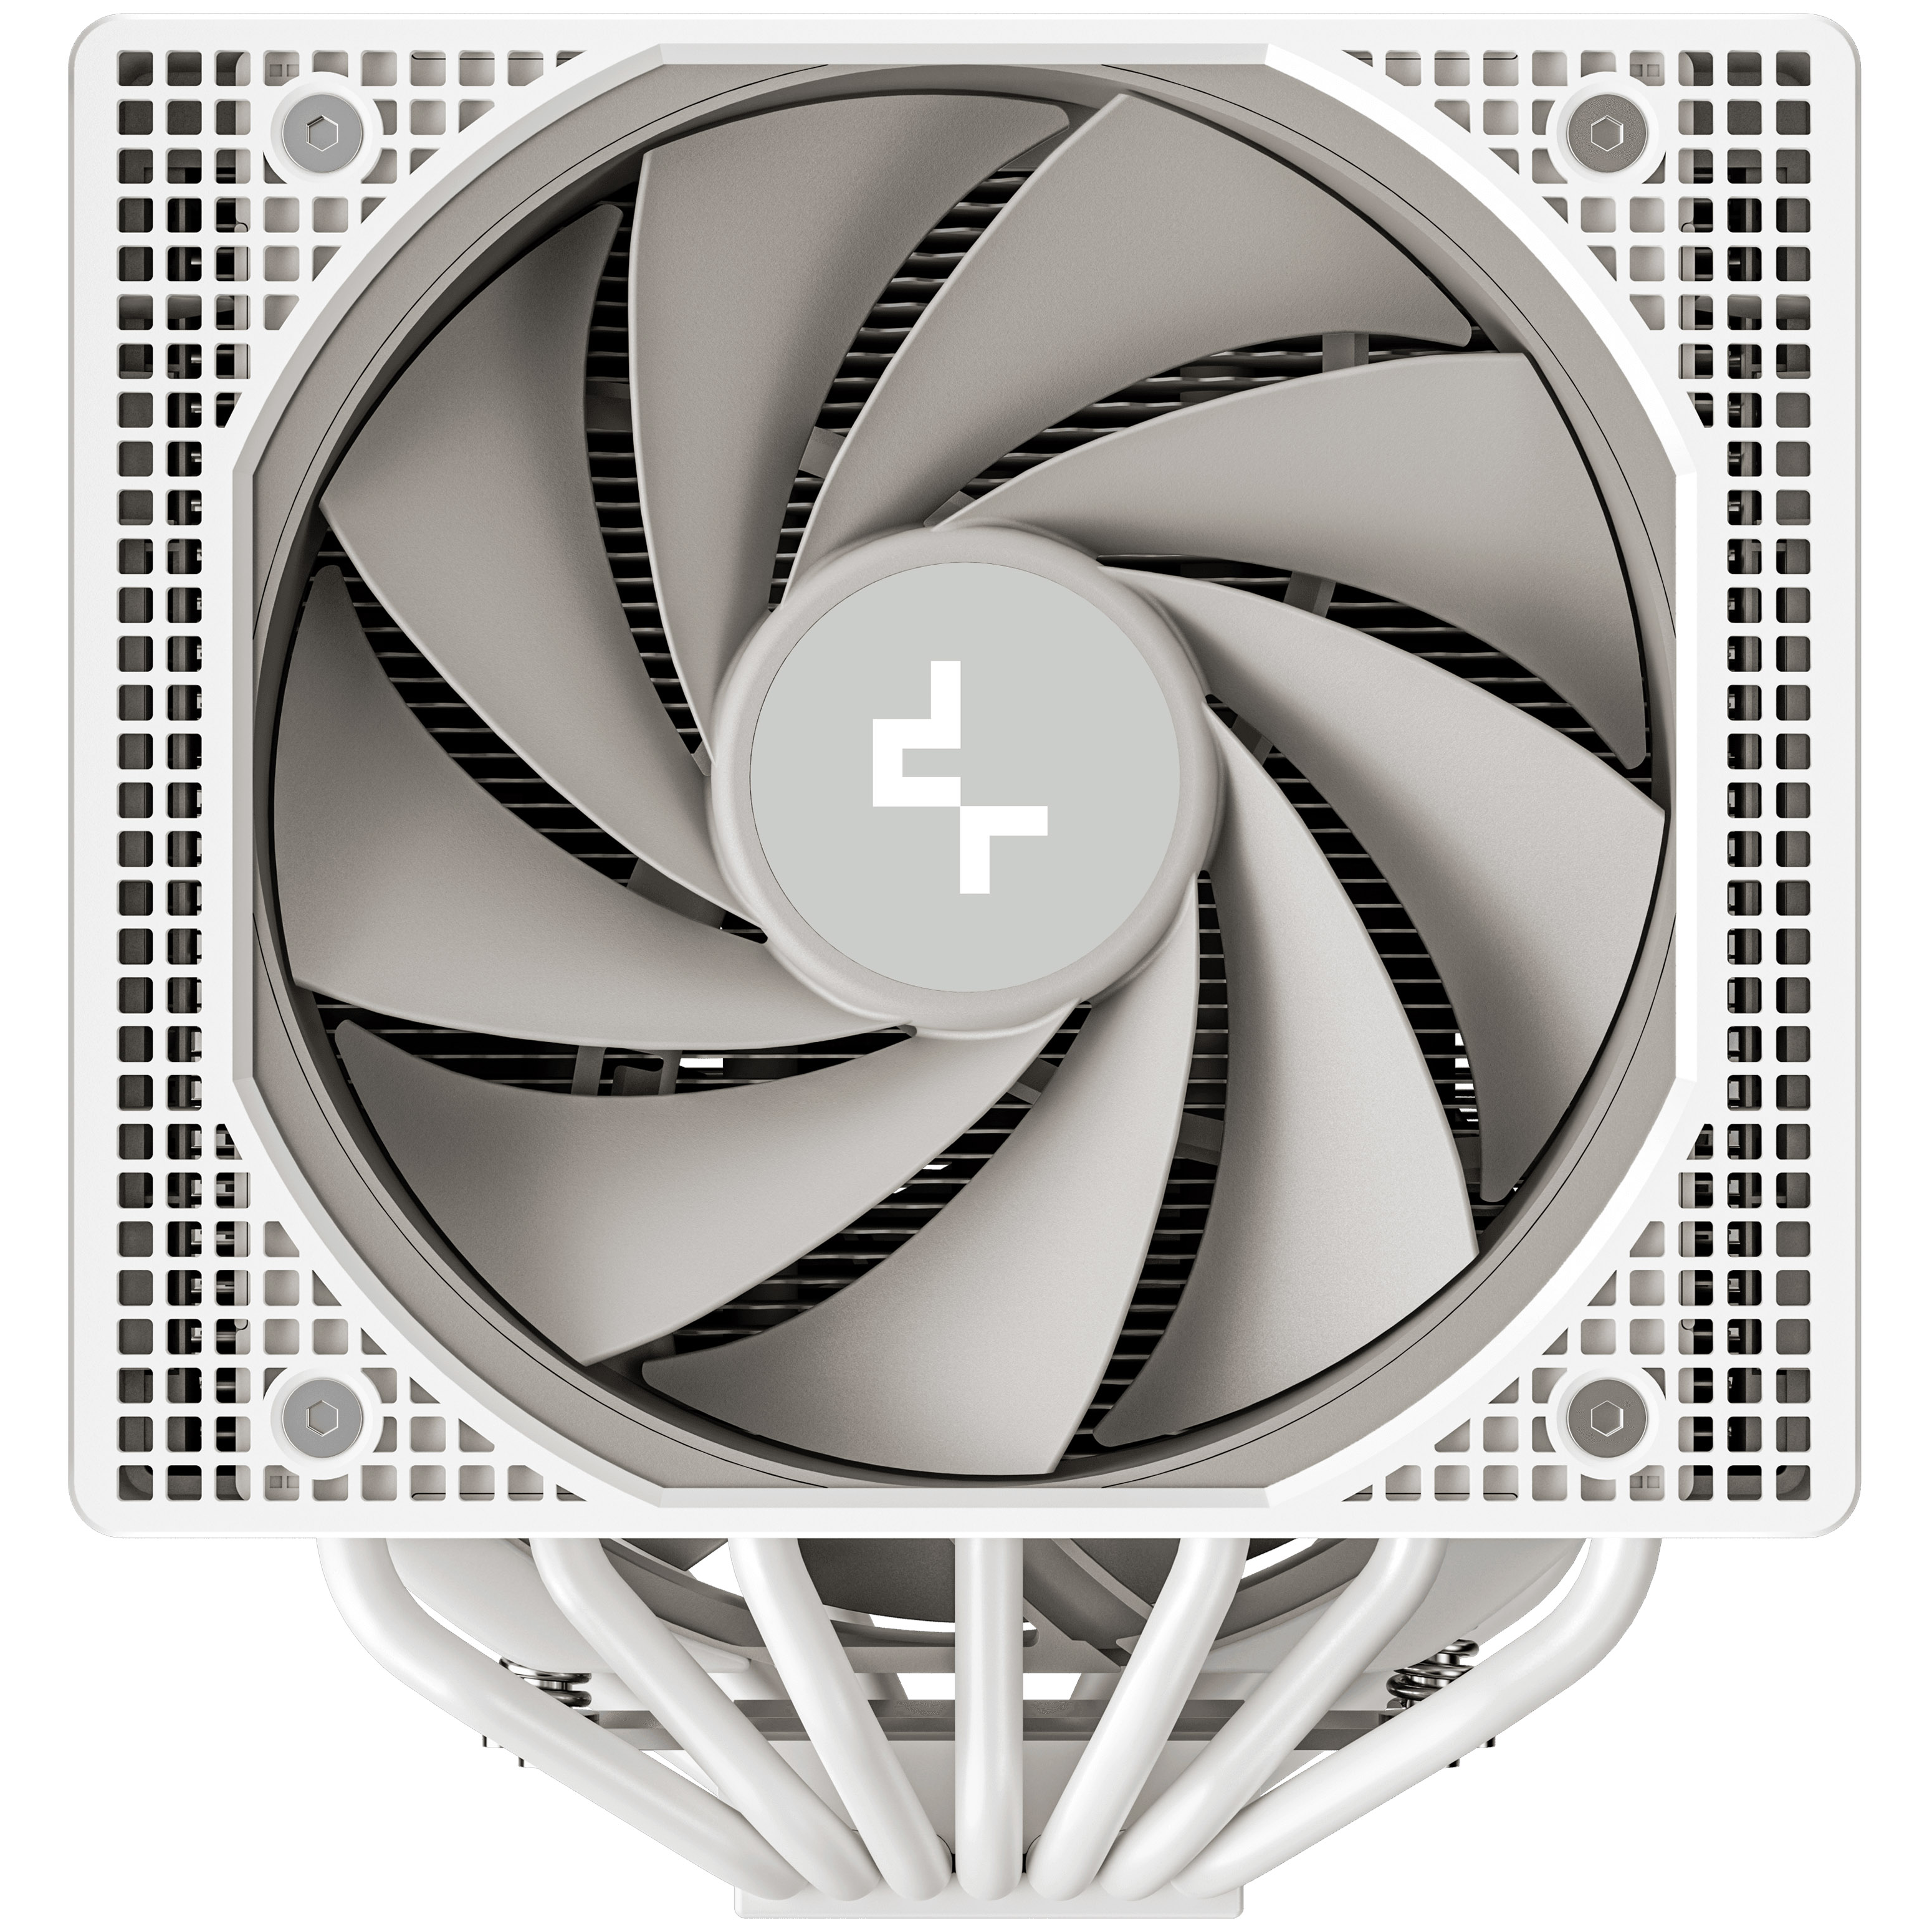 DeepCool - DeepCool ASSASSIN IV White 140mm Fan CPU Cooler - Black